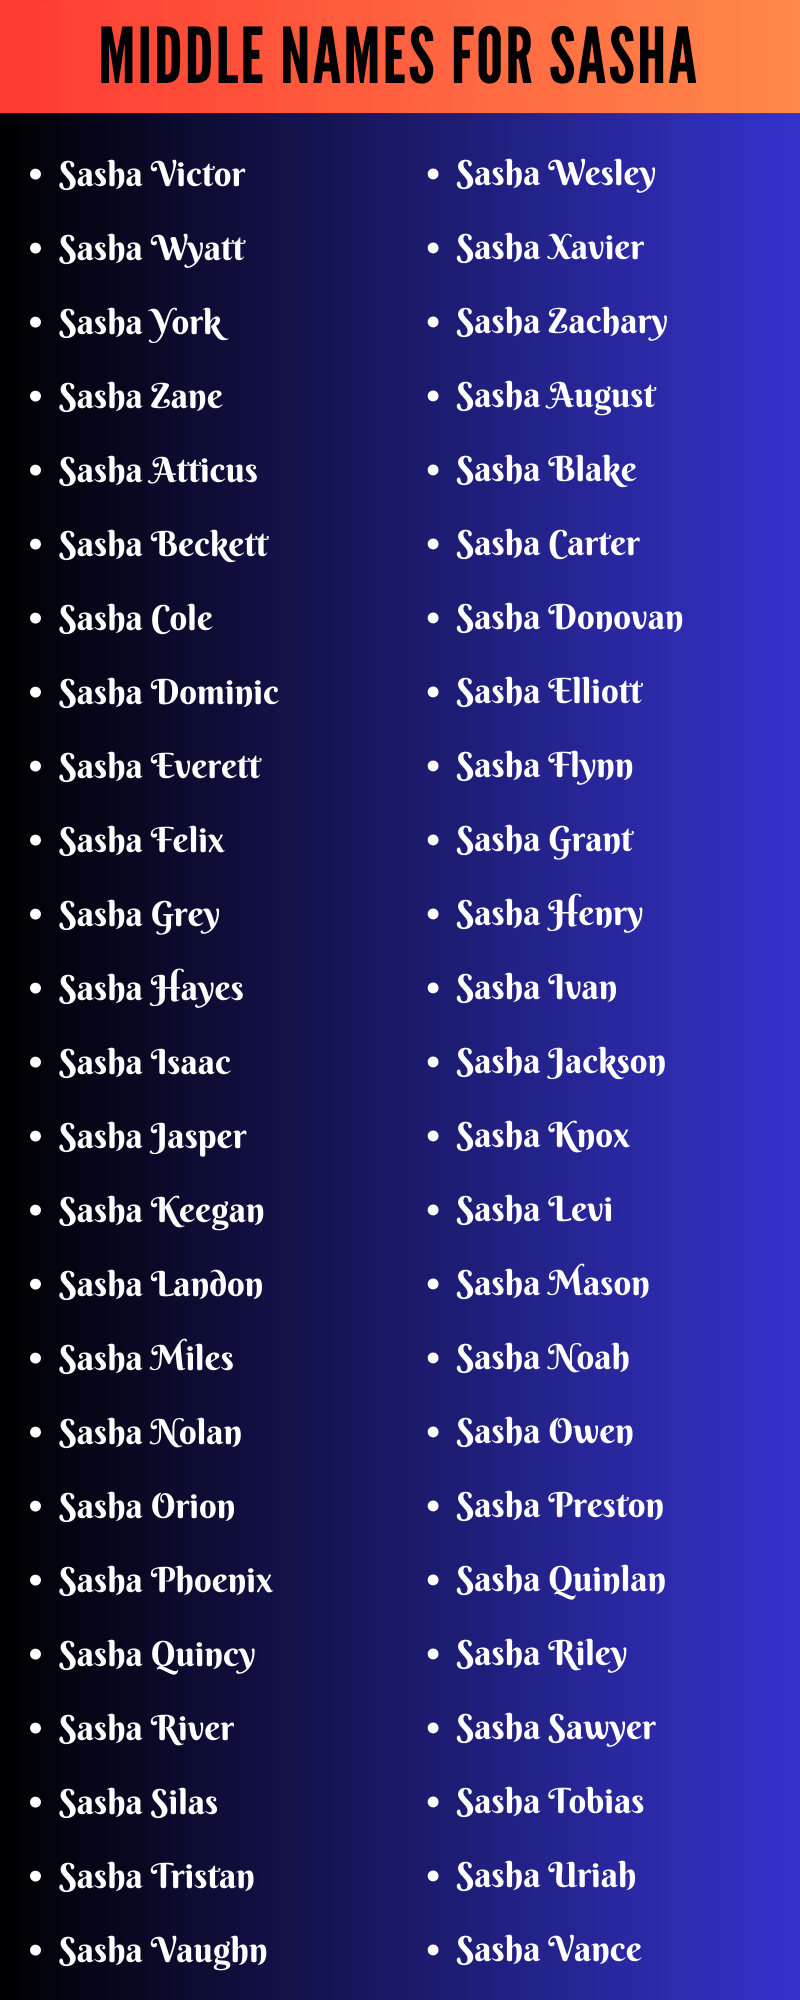 Middle Names For Sasha